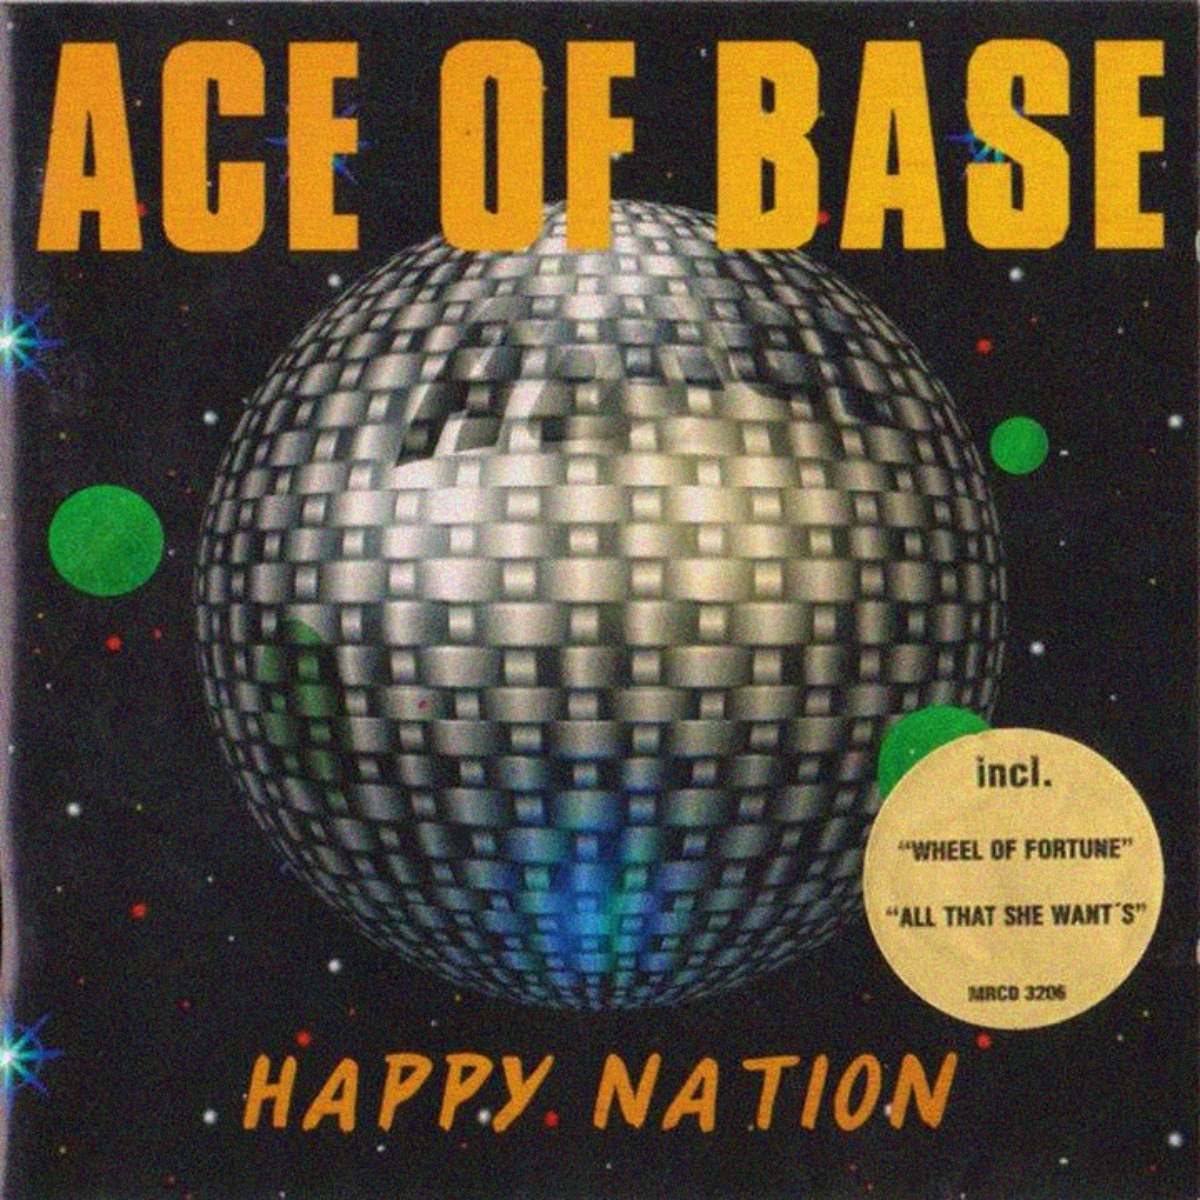 Happy Nation (album d'Ace Of Base)